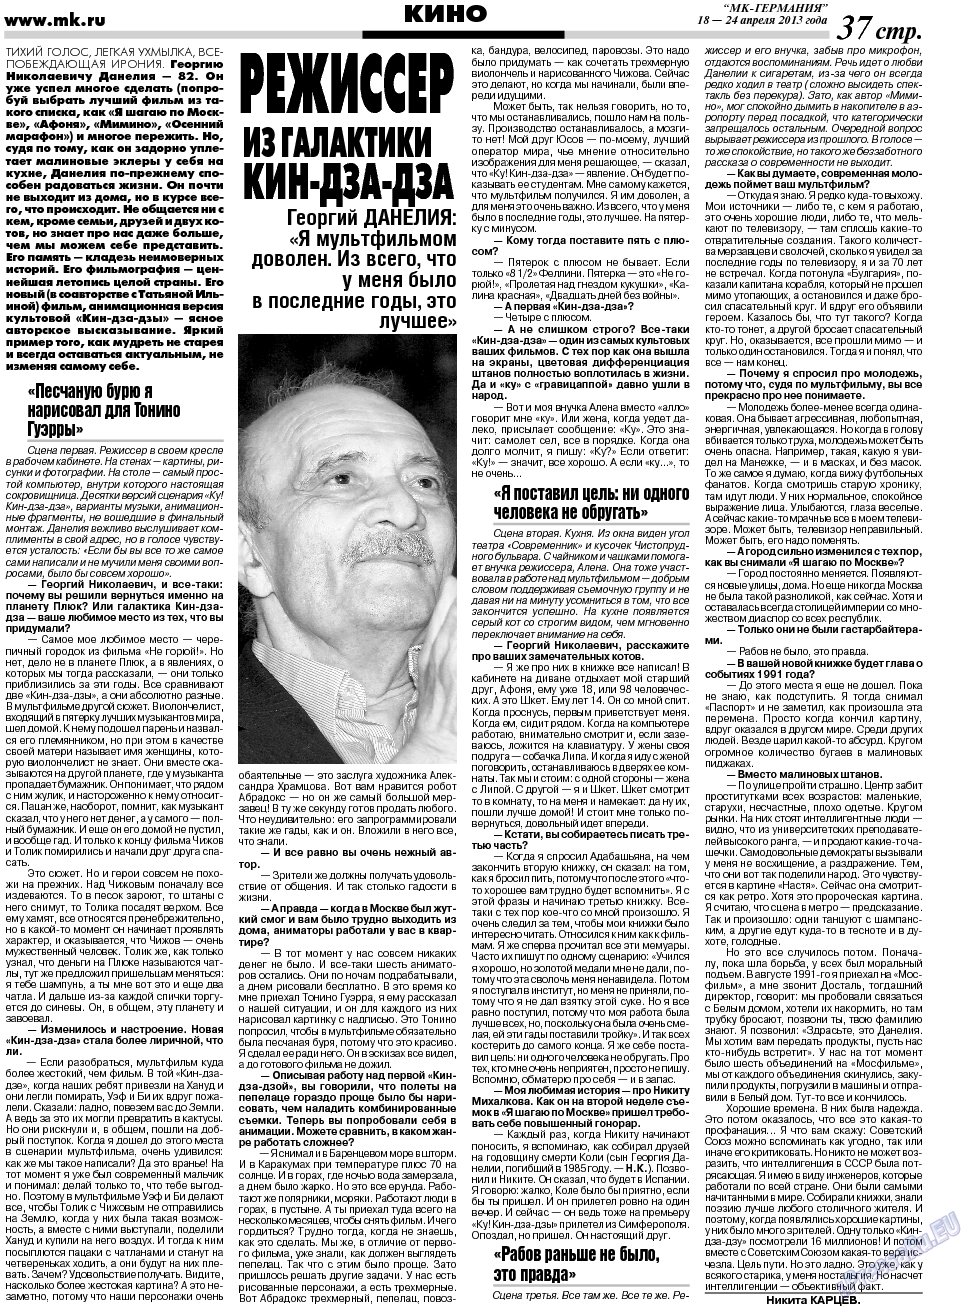 МК-Германия (газета). 2013 год, номер 16, стр. 37